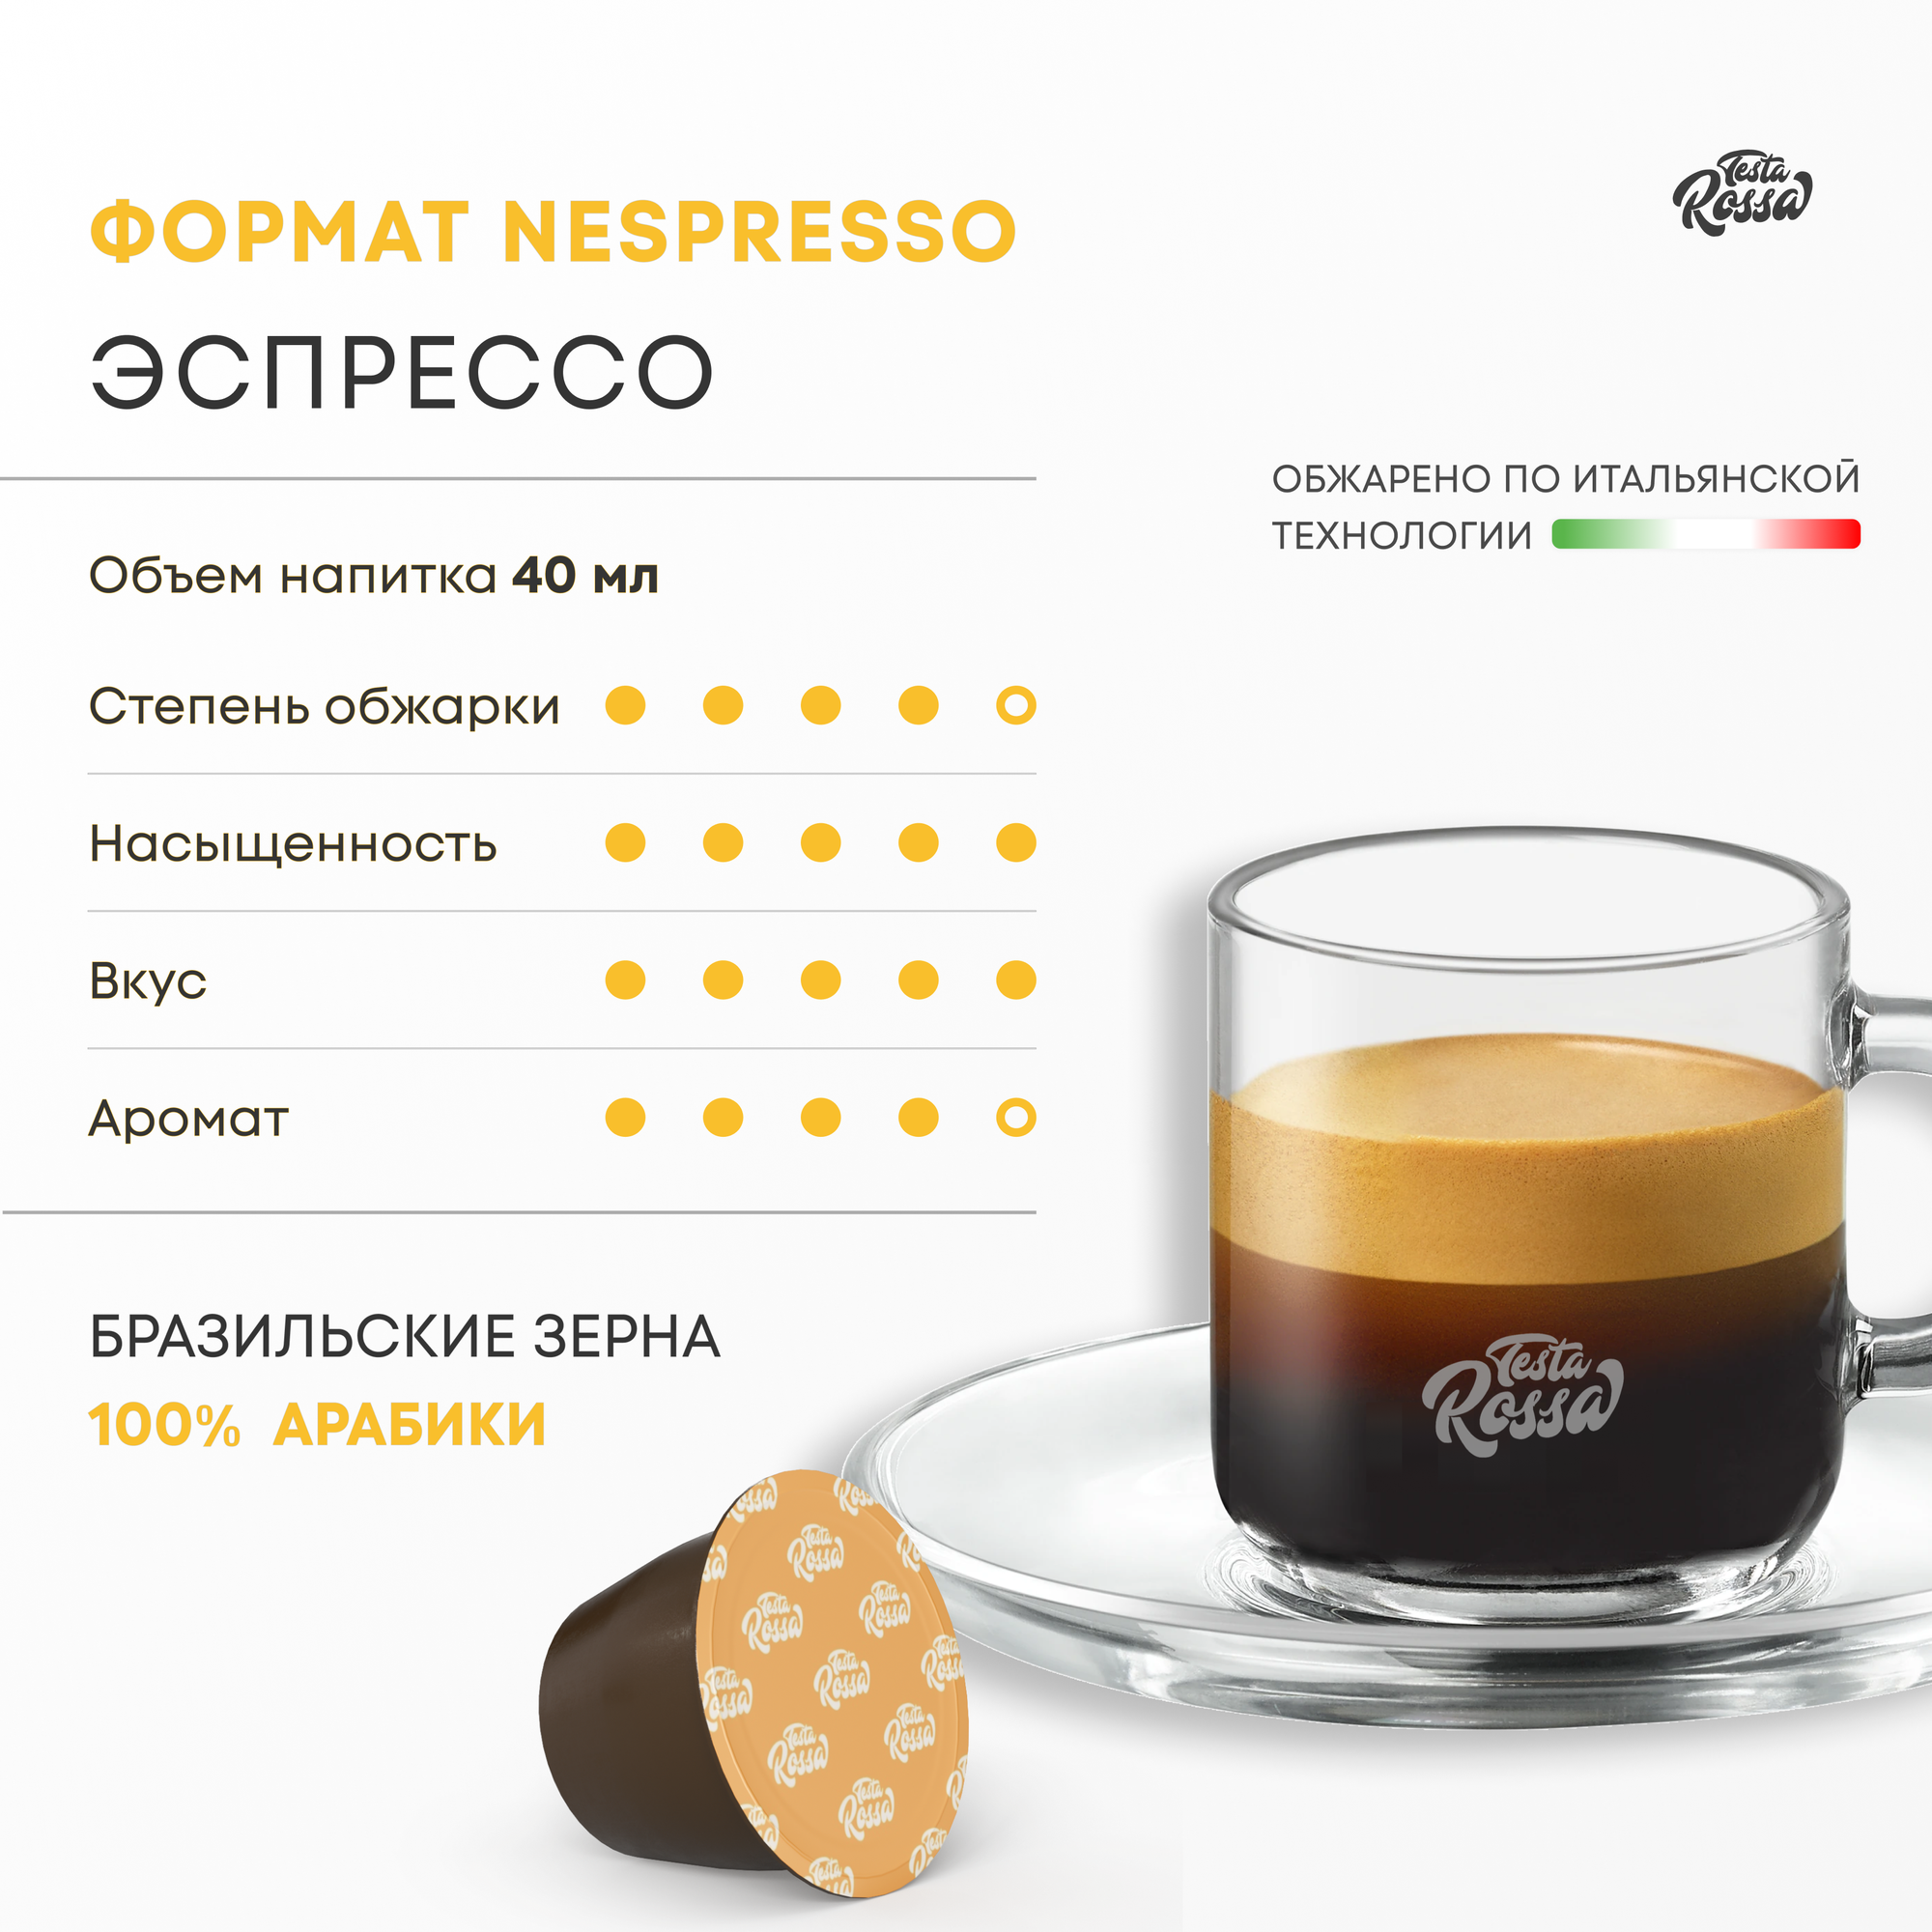 Эспрессо Арабика 100% - Капсулы Testa Rossa - 500 шт, набор кофе в капсулах неспрессо, для кофемашины NESPRESSO - фотография № 2